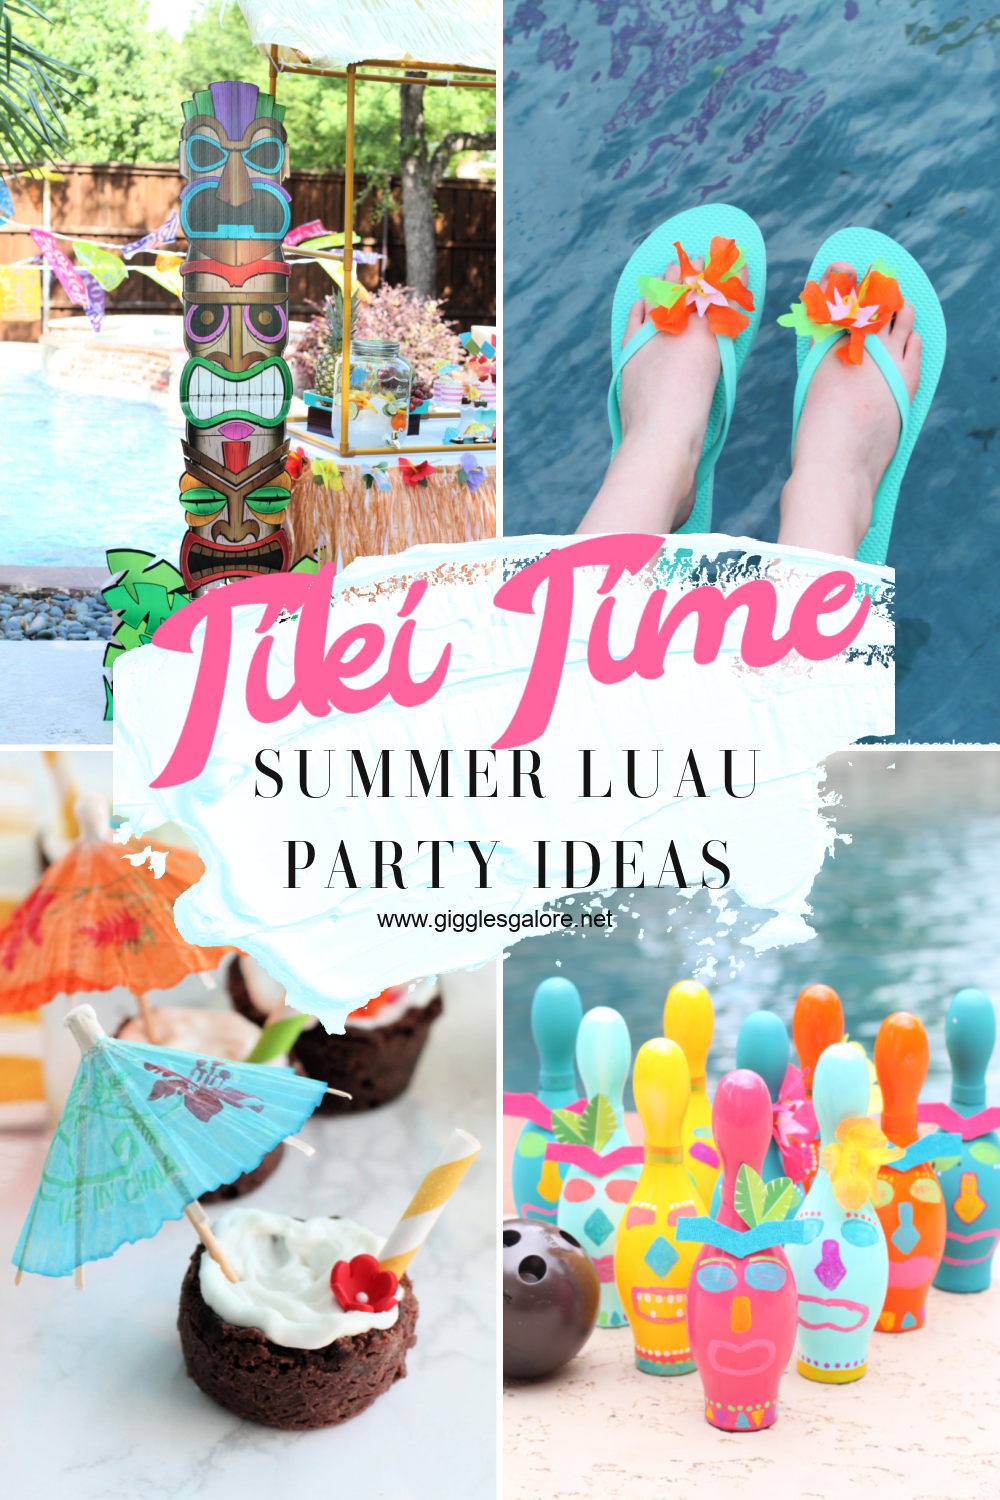 Teen Tiki Time Birthday Party Ideas - Giggles Galore